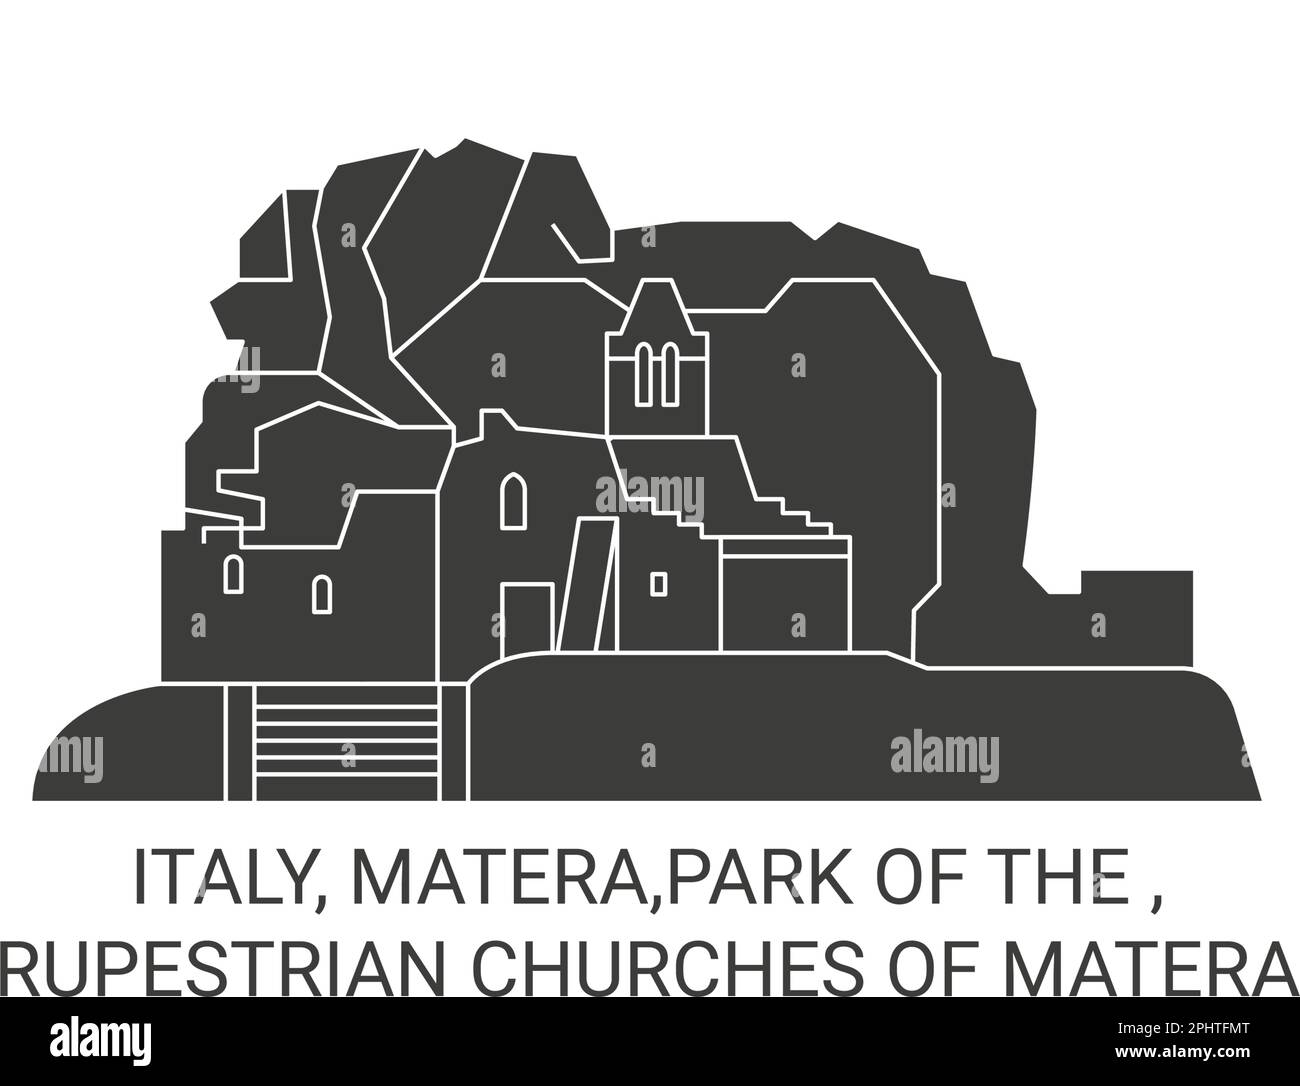 Italien, Matera, Park of the , Rupestrische Kirchen von Matera reisen Wahrzeichen Vektordarstellung Stock Vektor